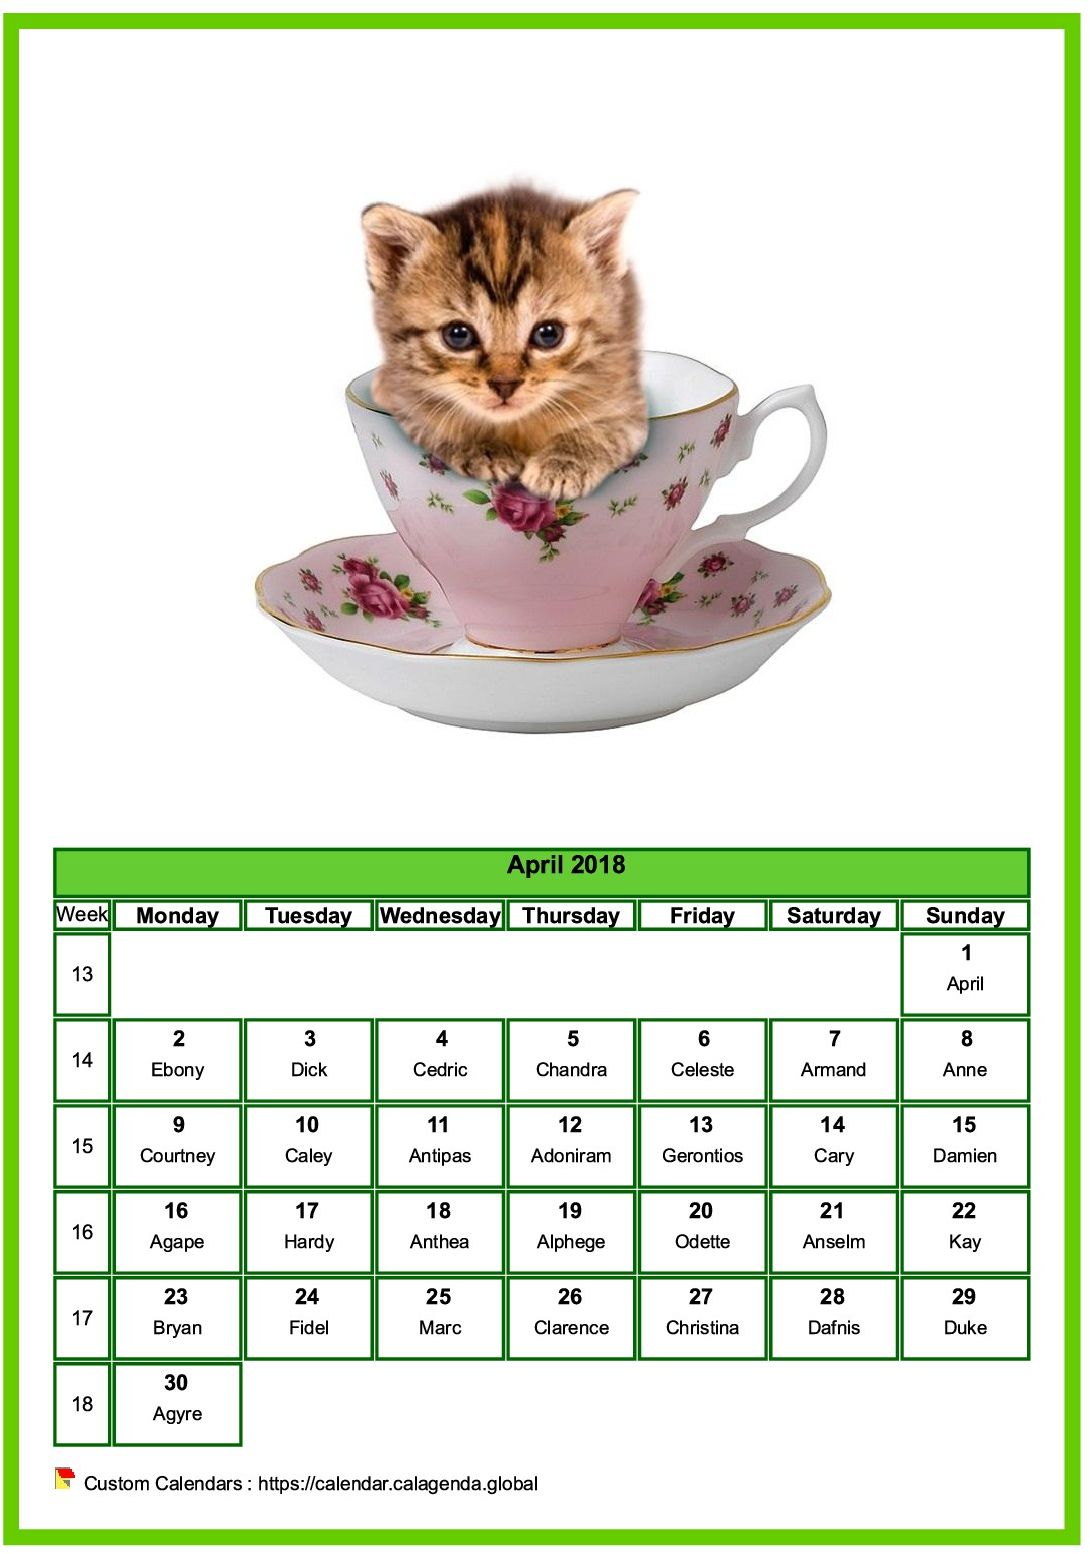 Calendar April 2018 cats